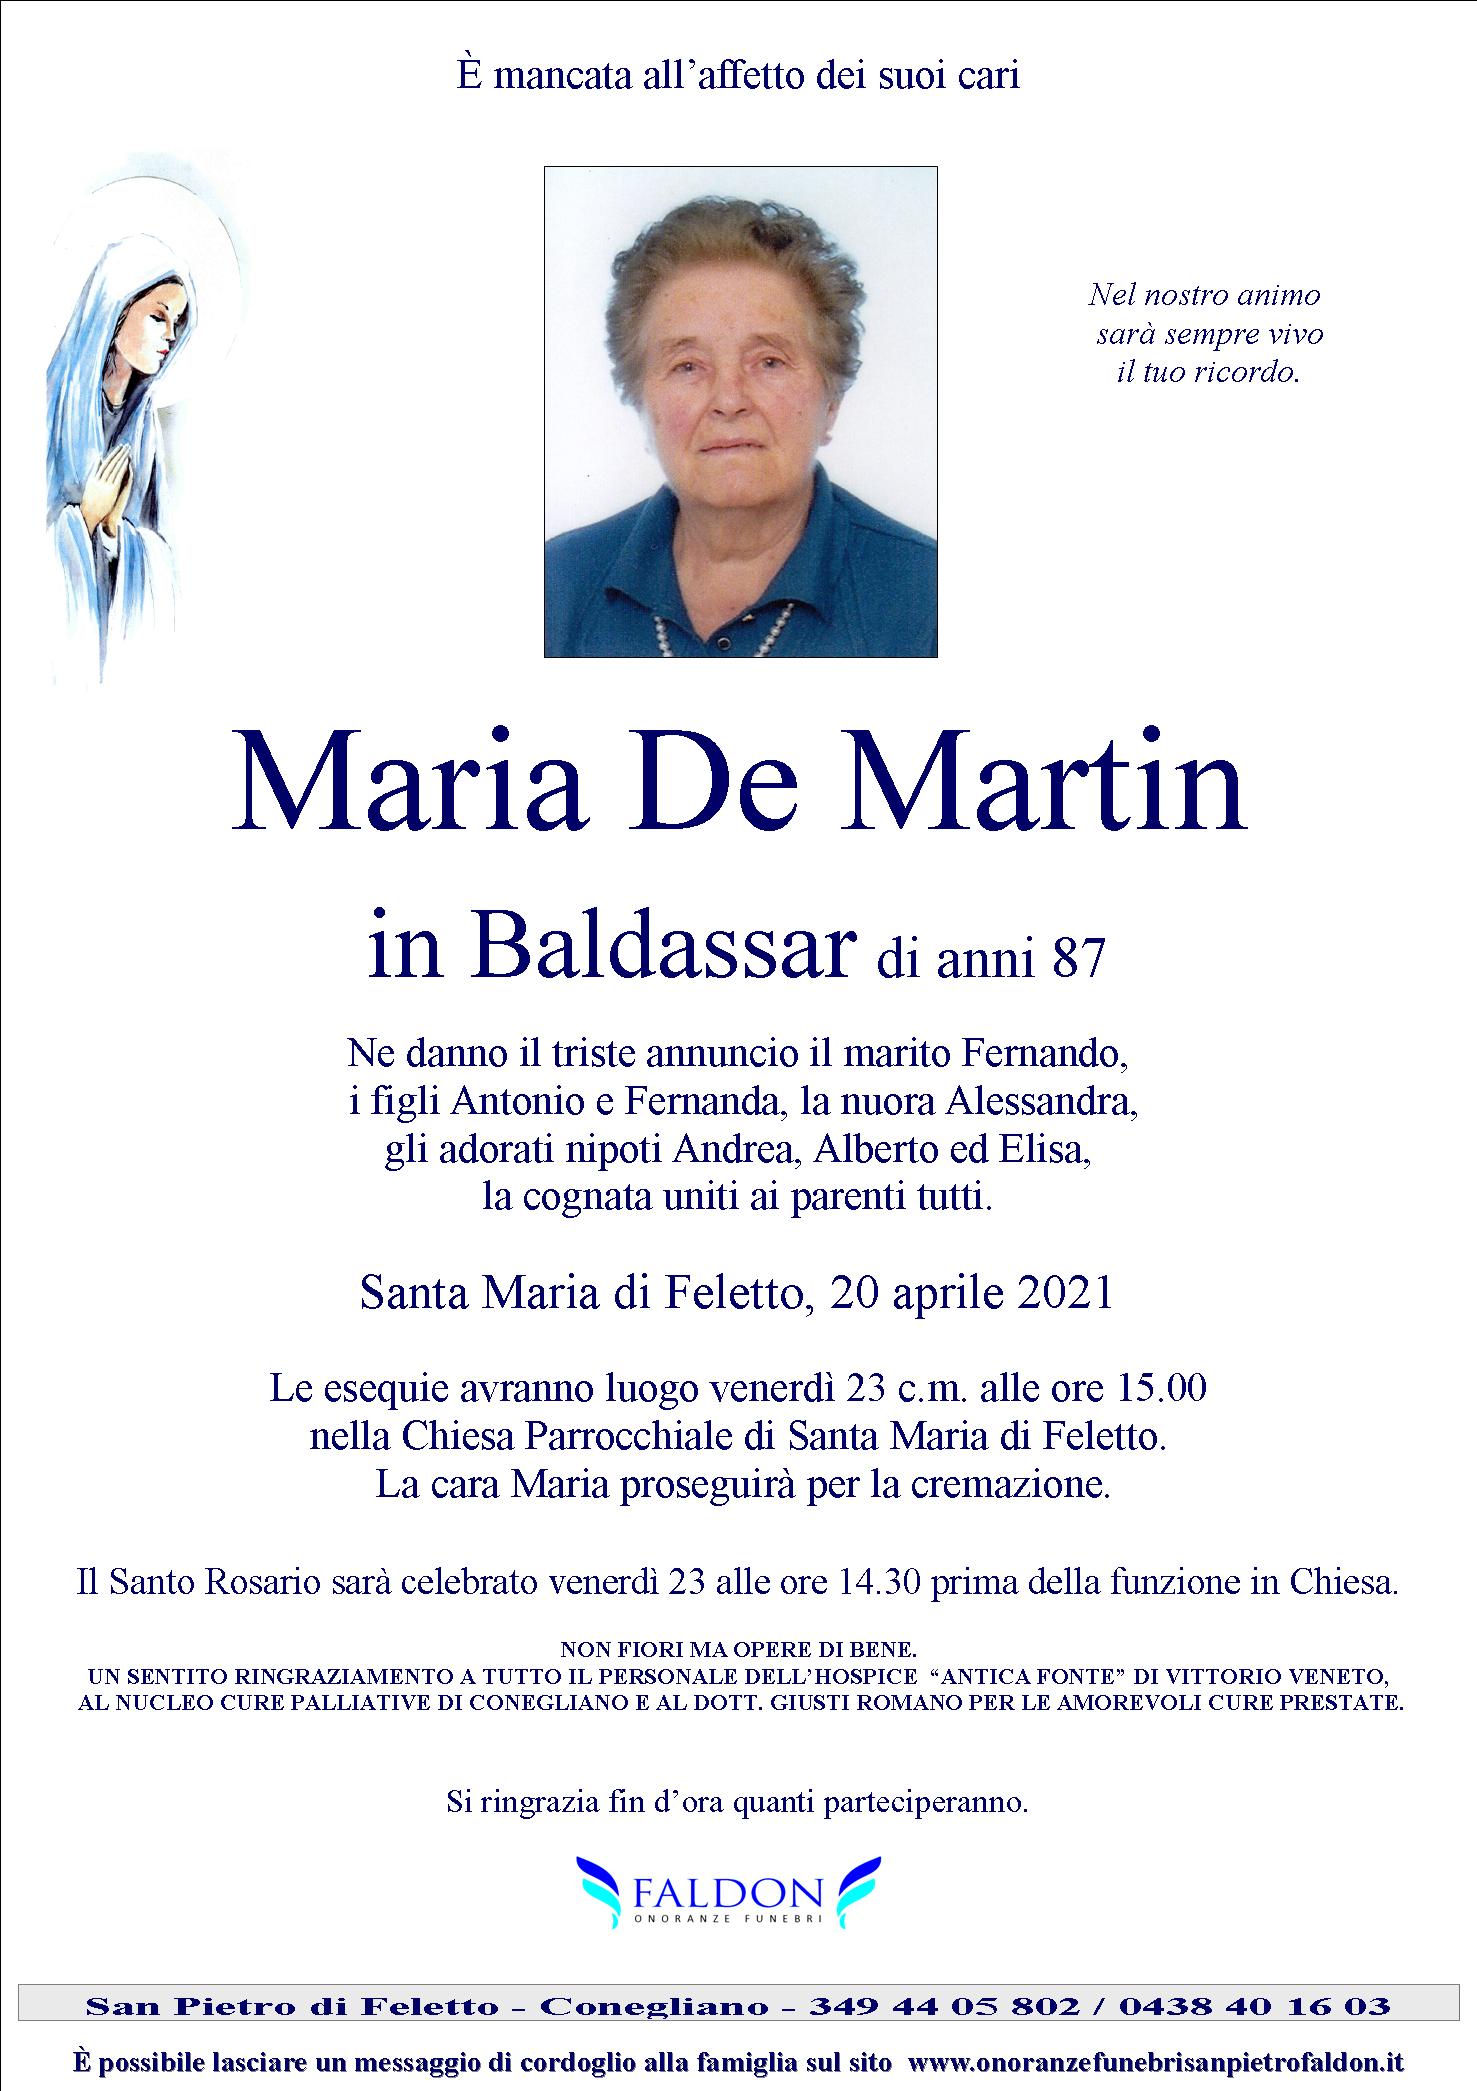 Maria De Martin